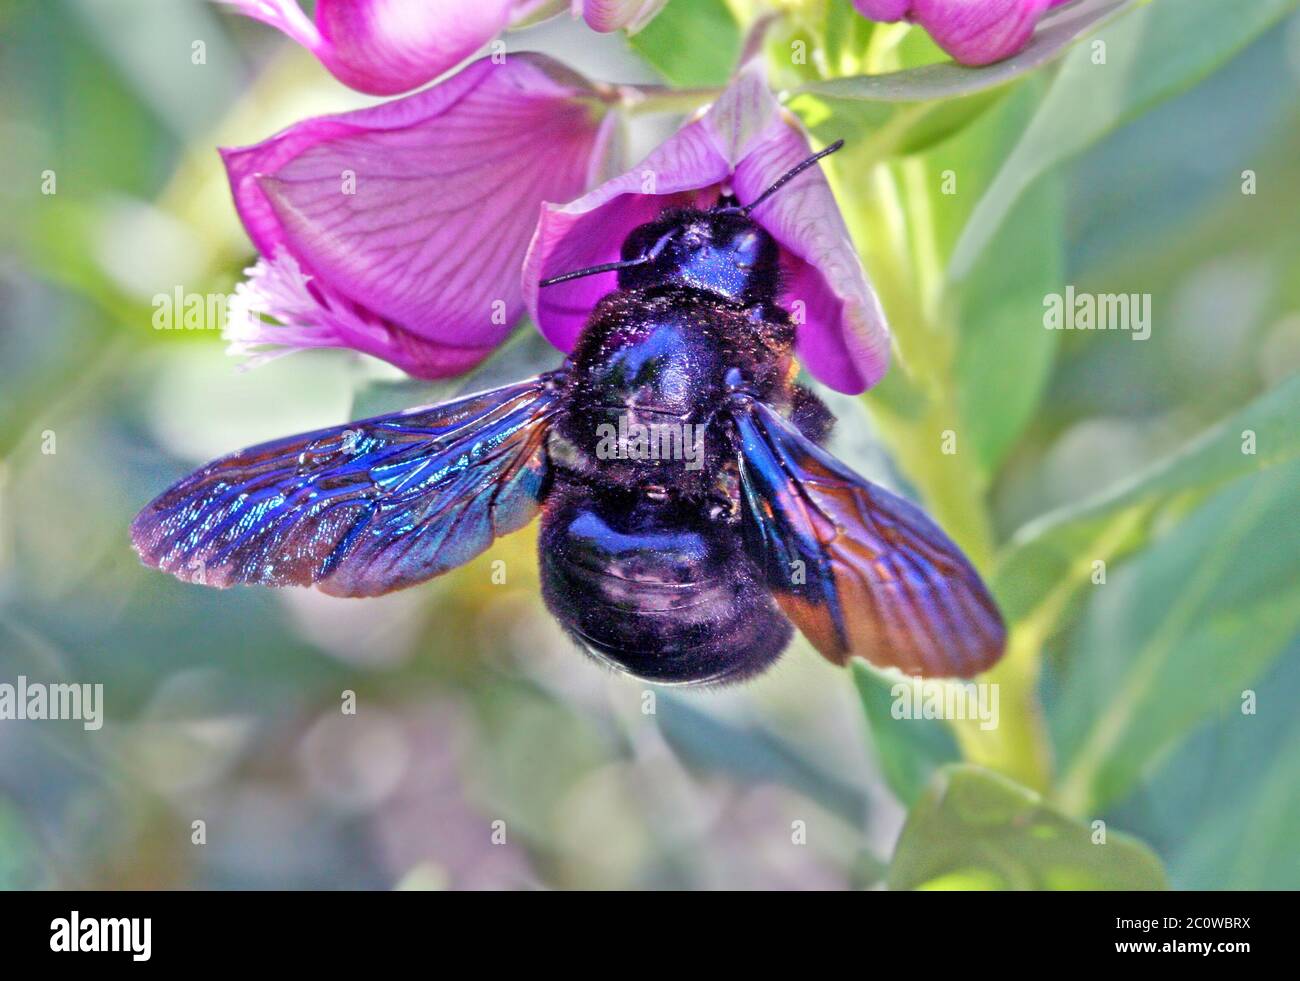 Blu insetto animale bloom blossom fiorire fiorente swarthy nero jetblack Foto Stock